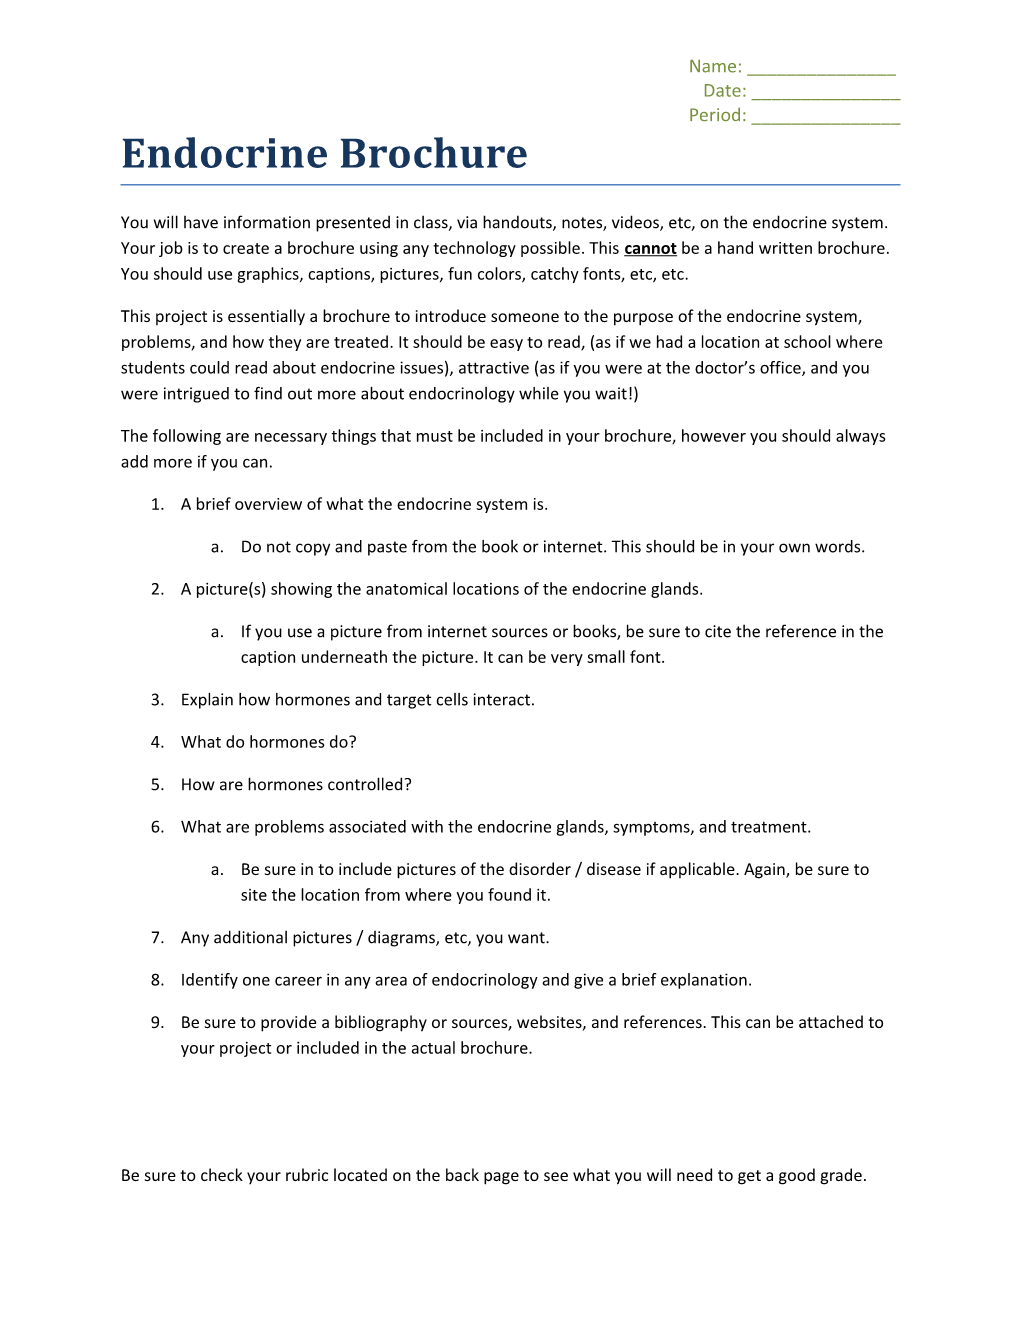 Endocrine Brochure